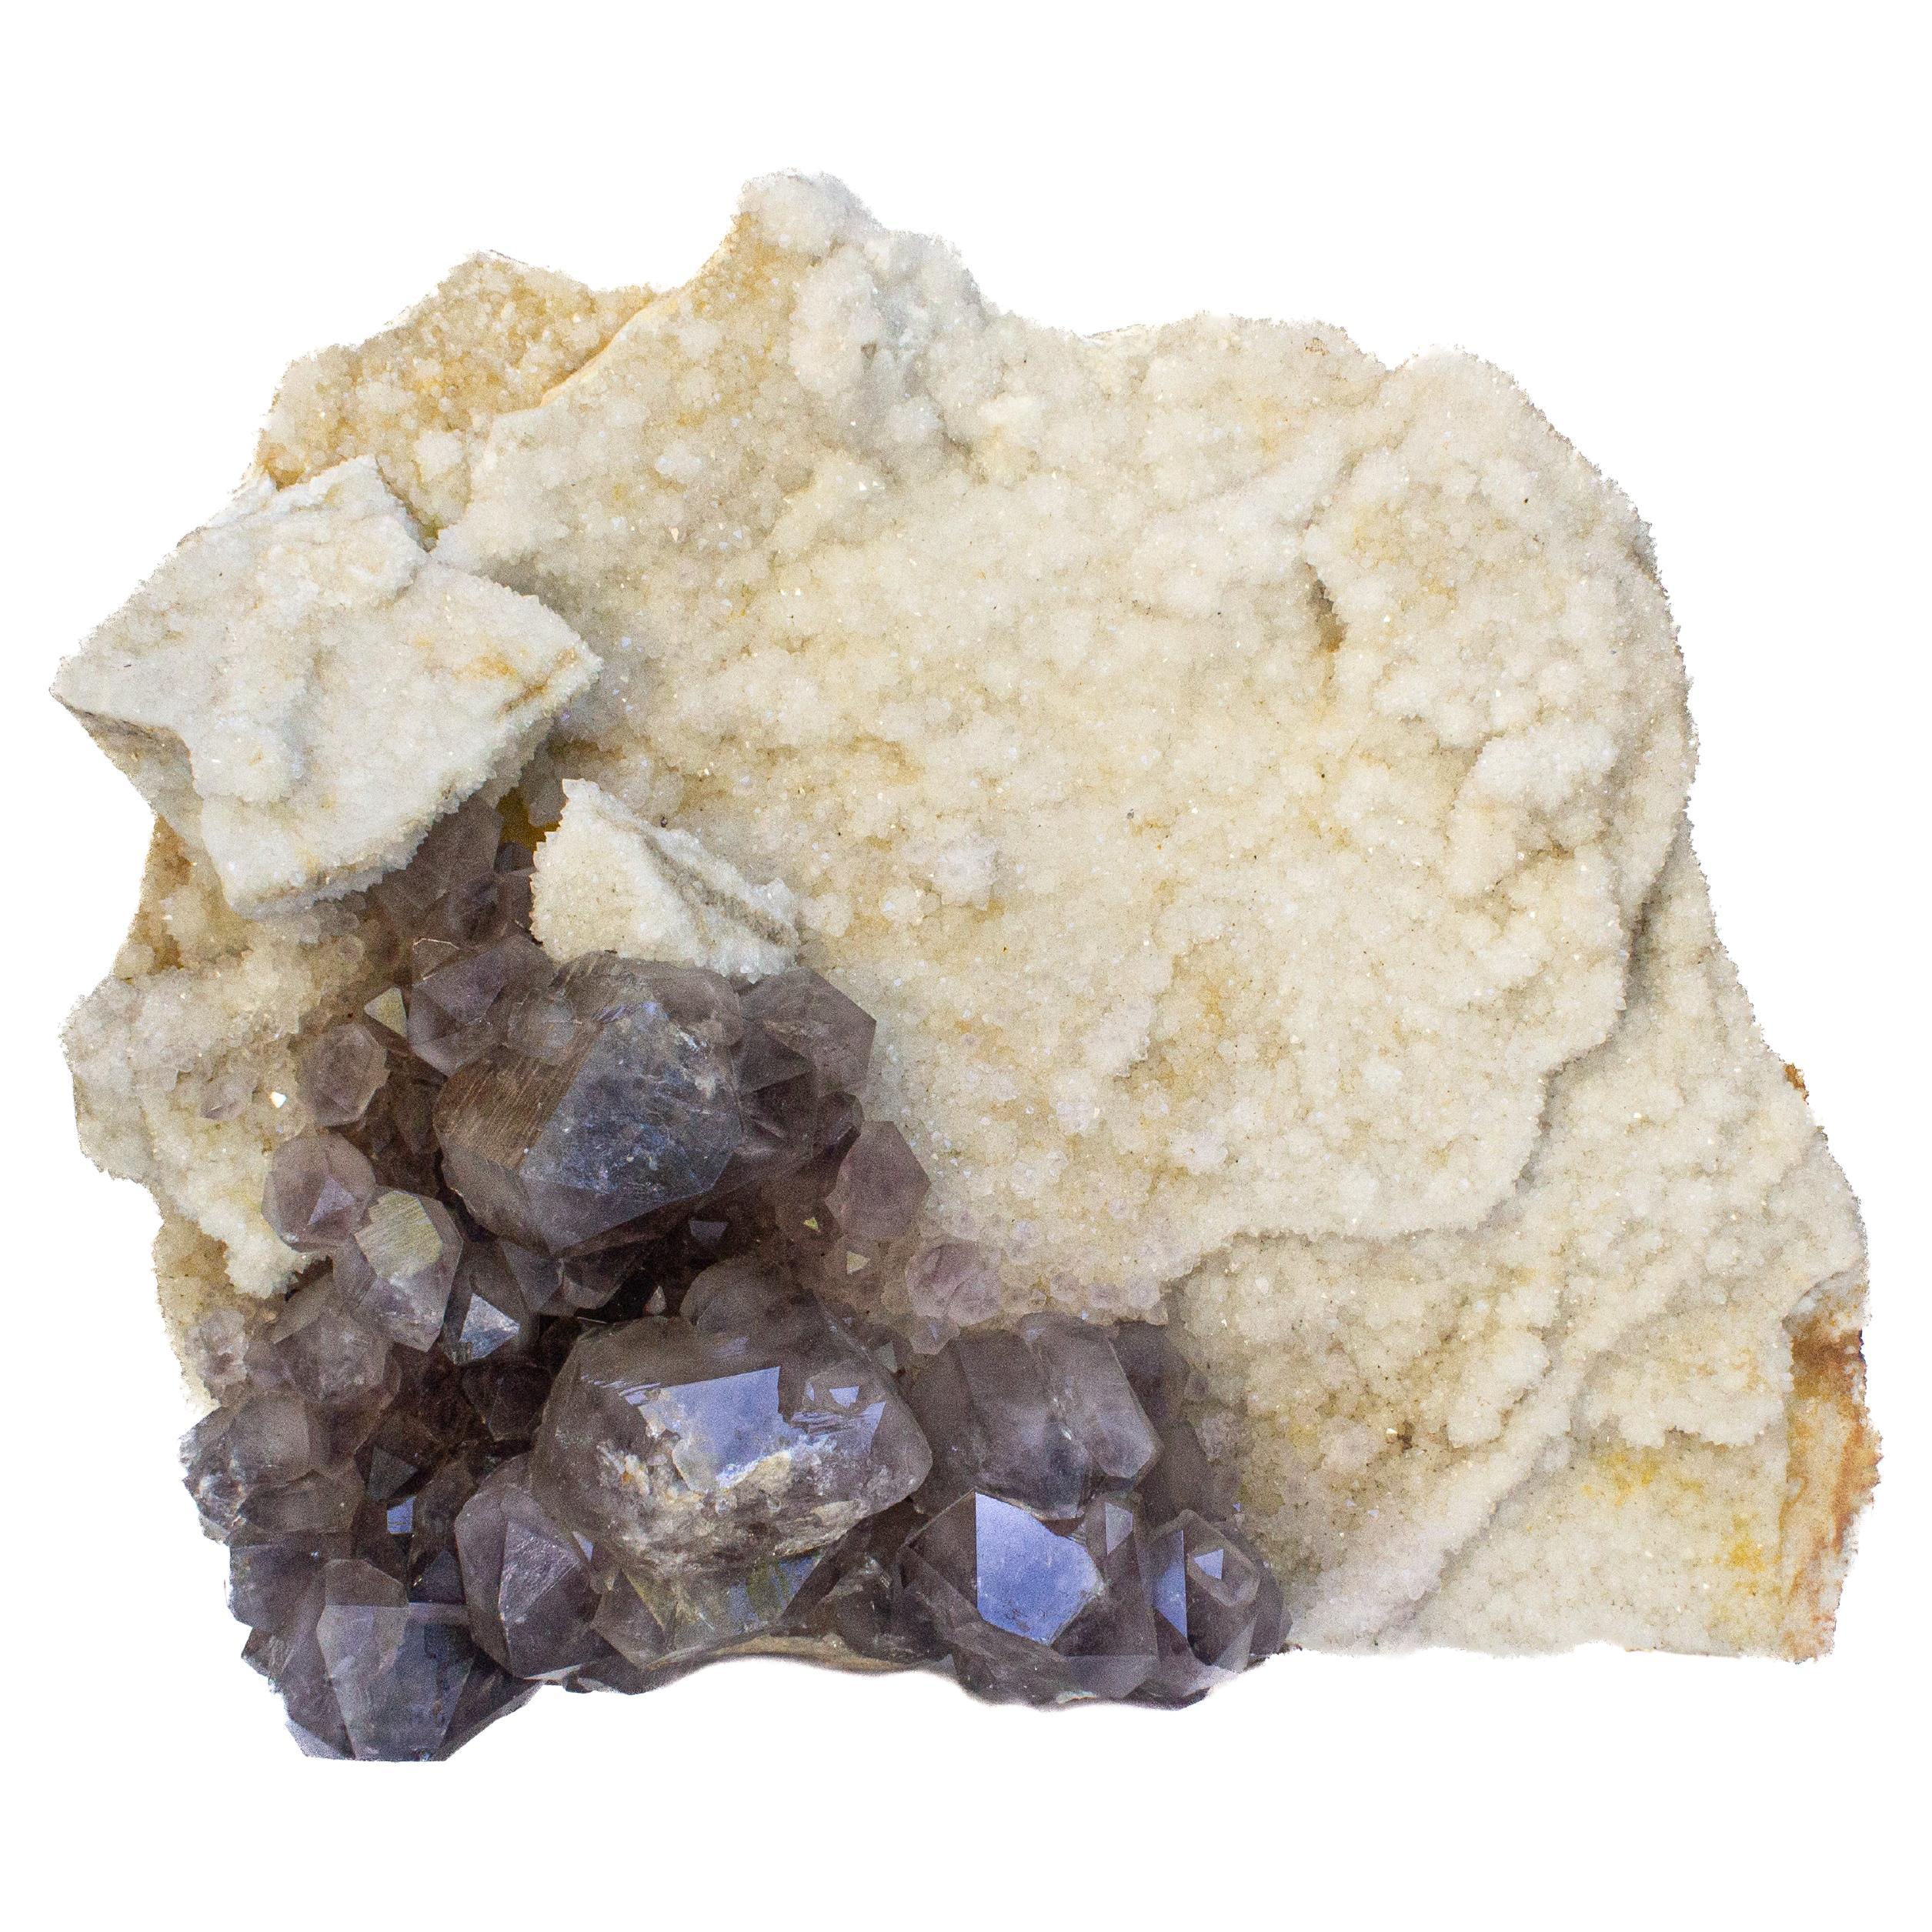 Grand grappe de cristal de quartz laiteux avec cristaux d'améthyste